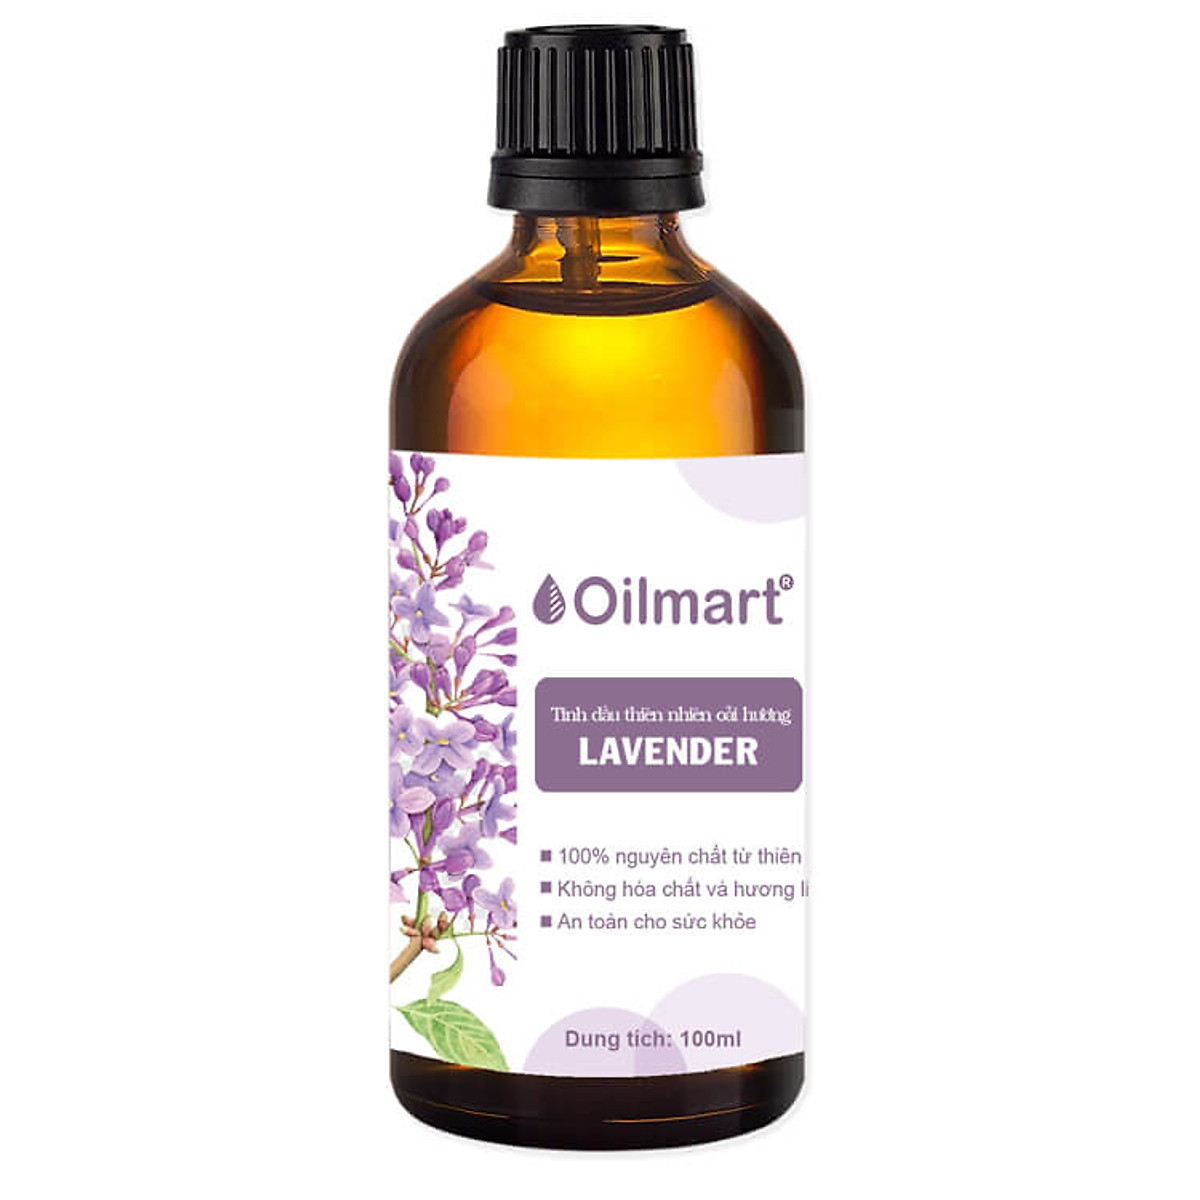 Tinh Dầu Thiên Nhiên Oải Hương Oilmart Lavender Essential Oil 100ml